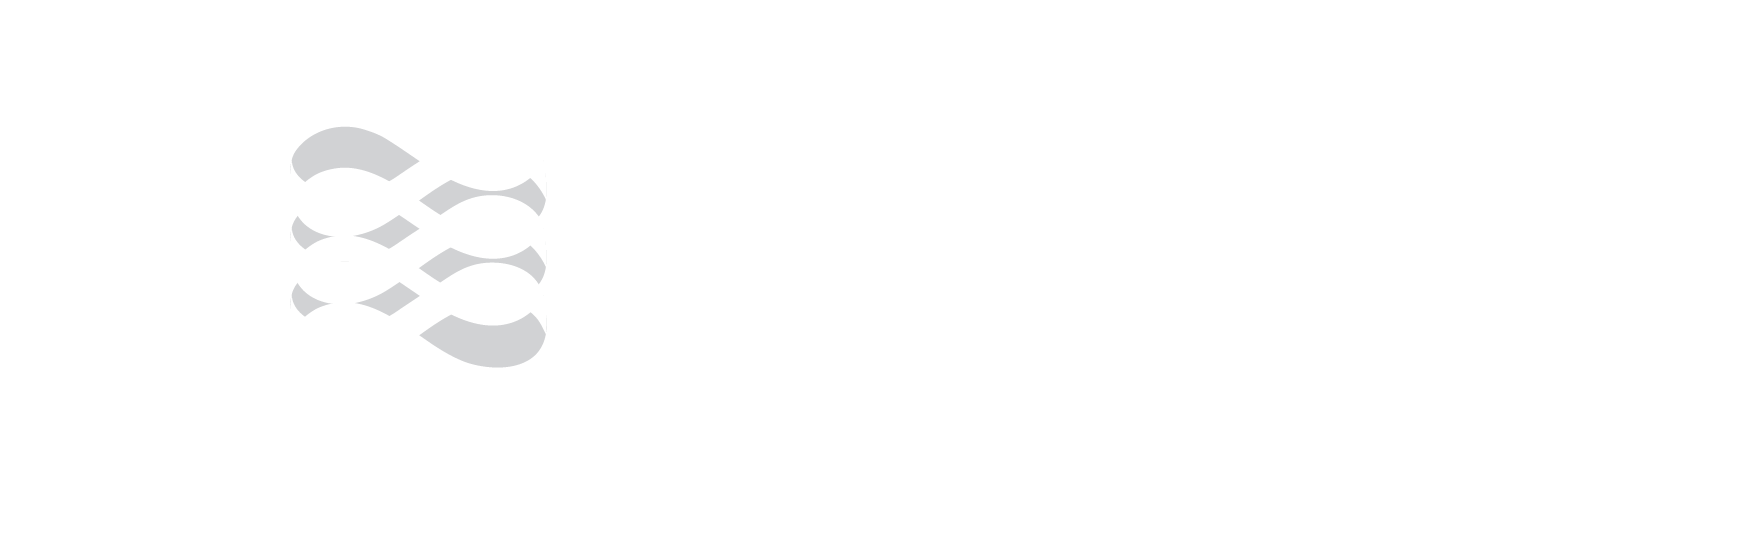 Biomed-Logo_white.png